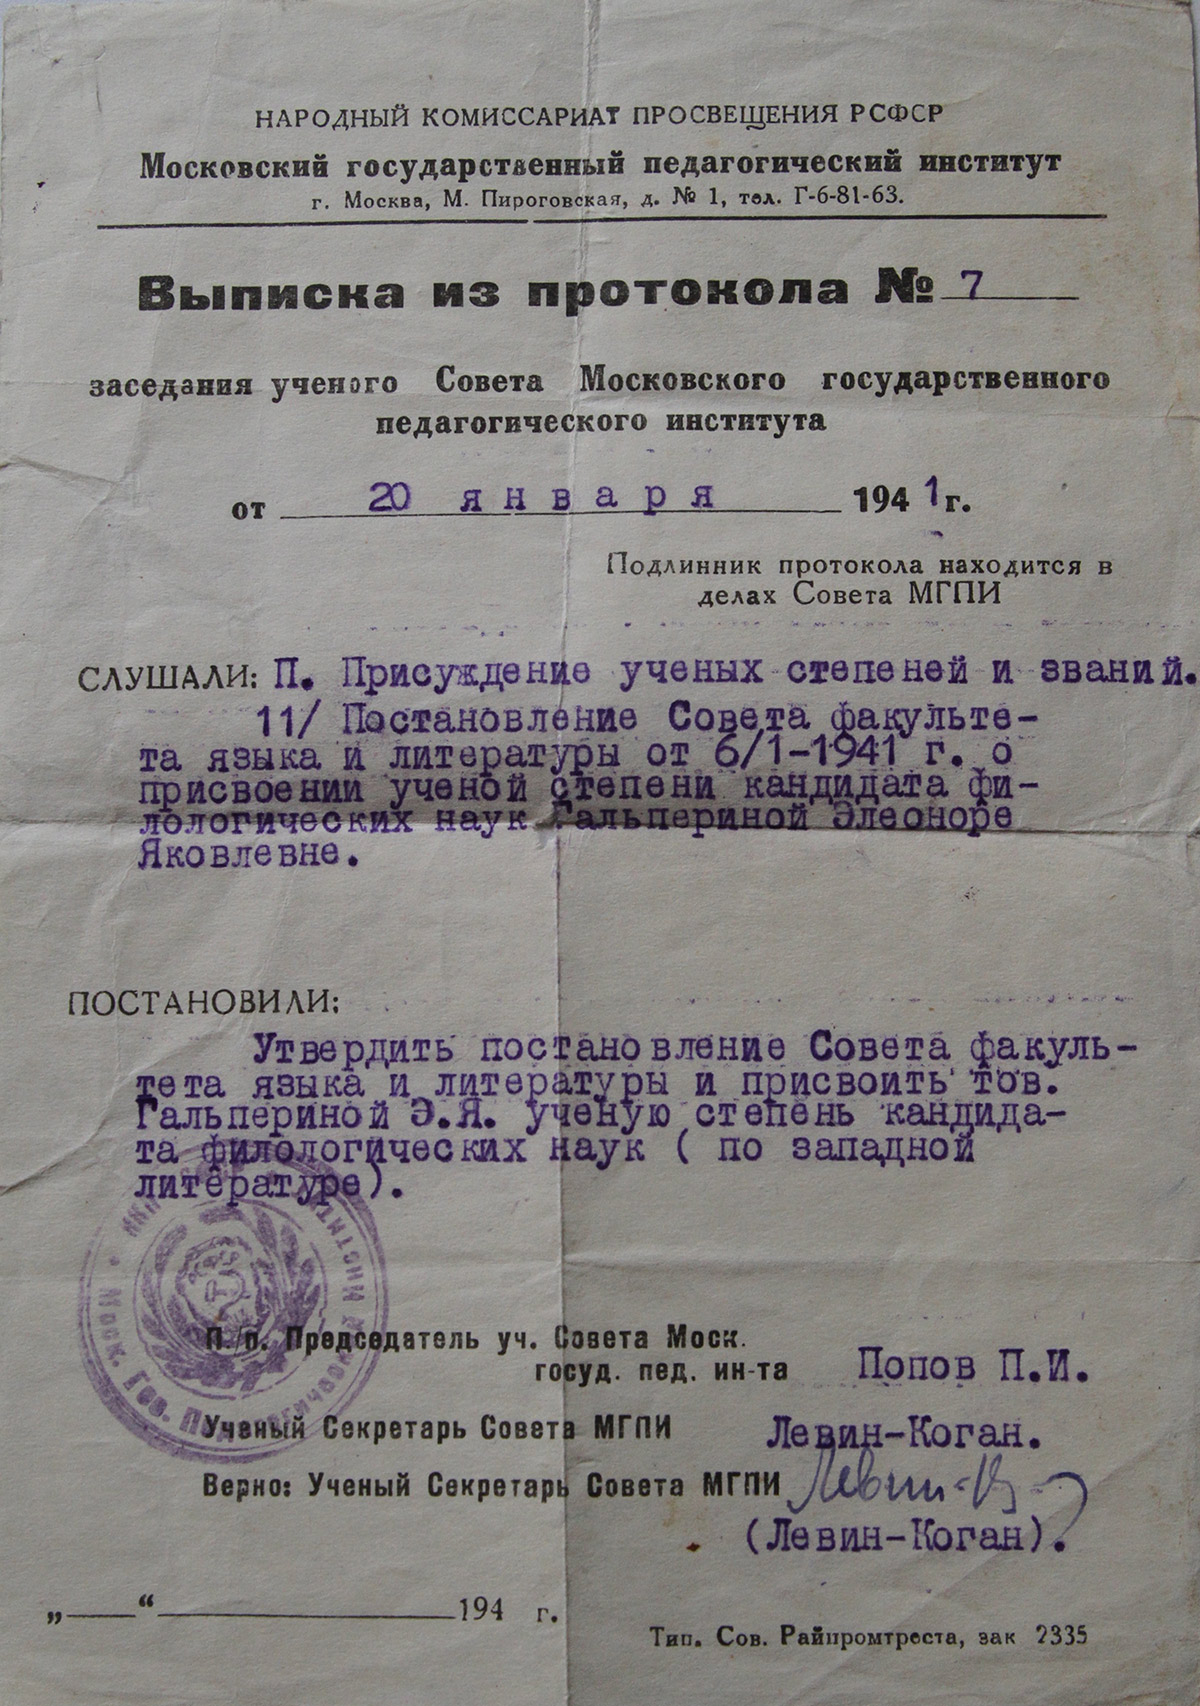 Выписка из протокола о присуждении учёной степени. 1941 г.